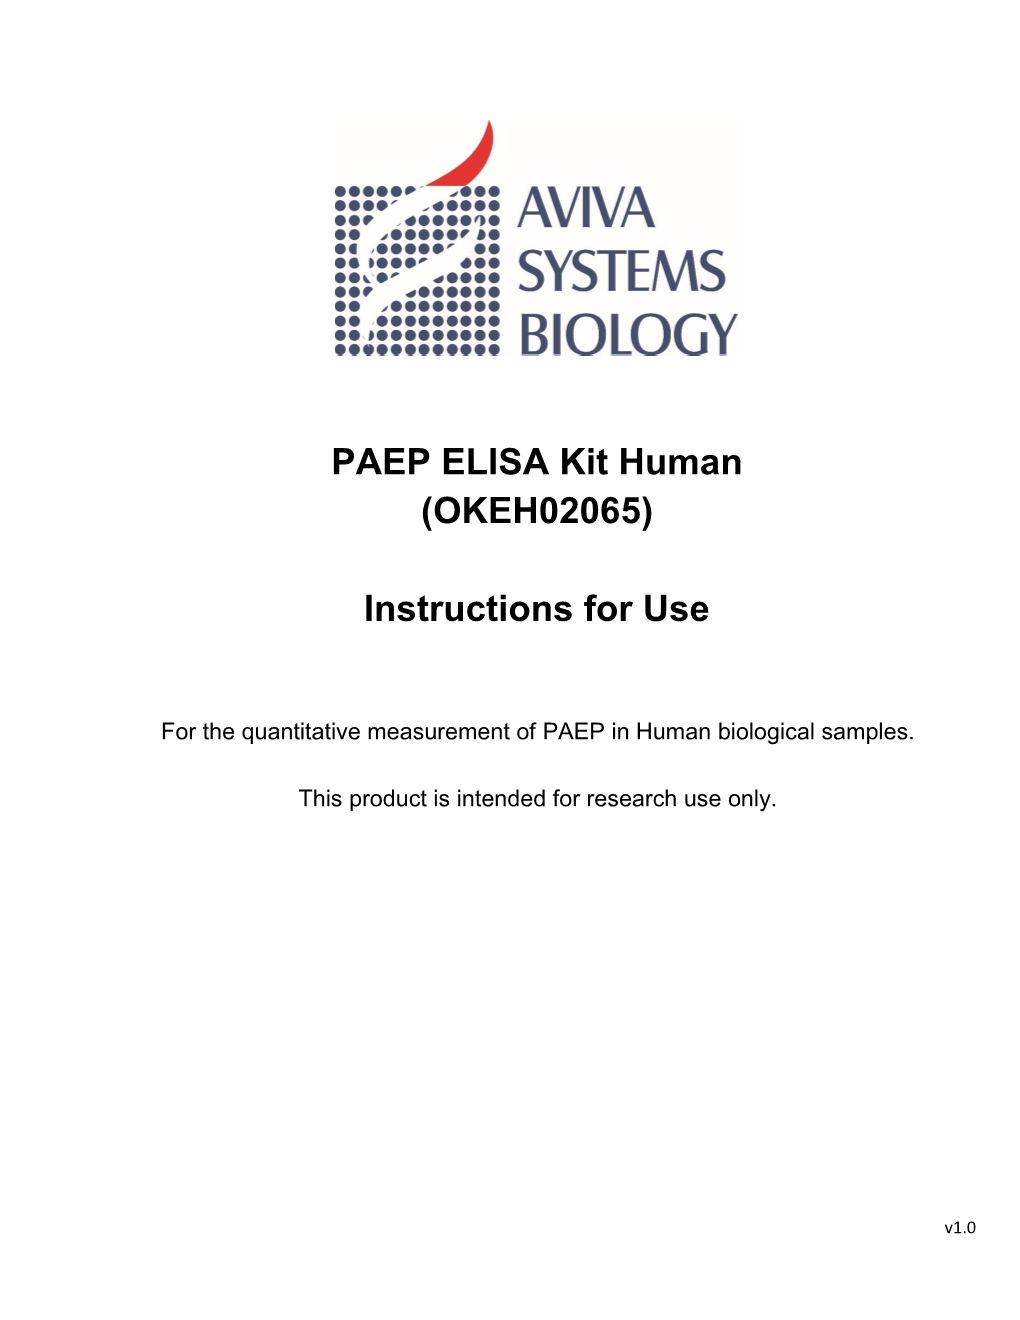 PAEP ELISA Kit Human (OKEH02065)